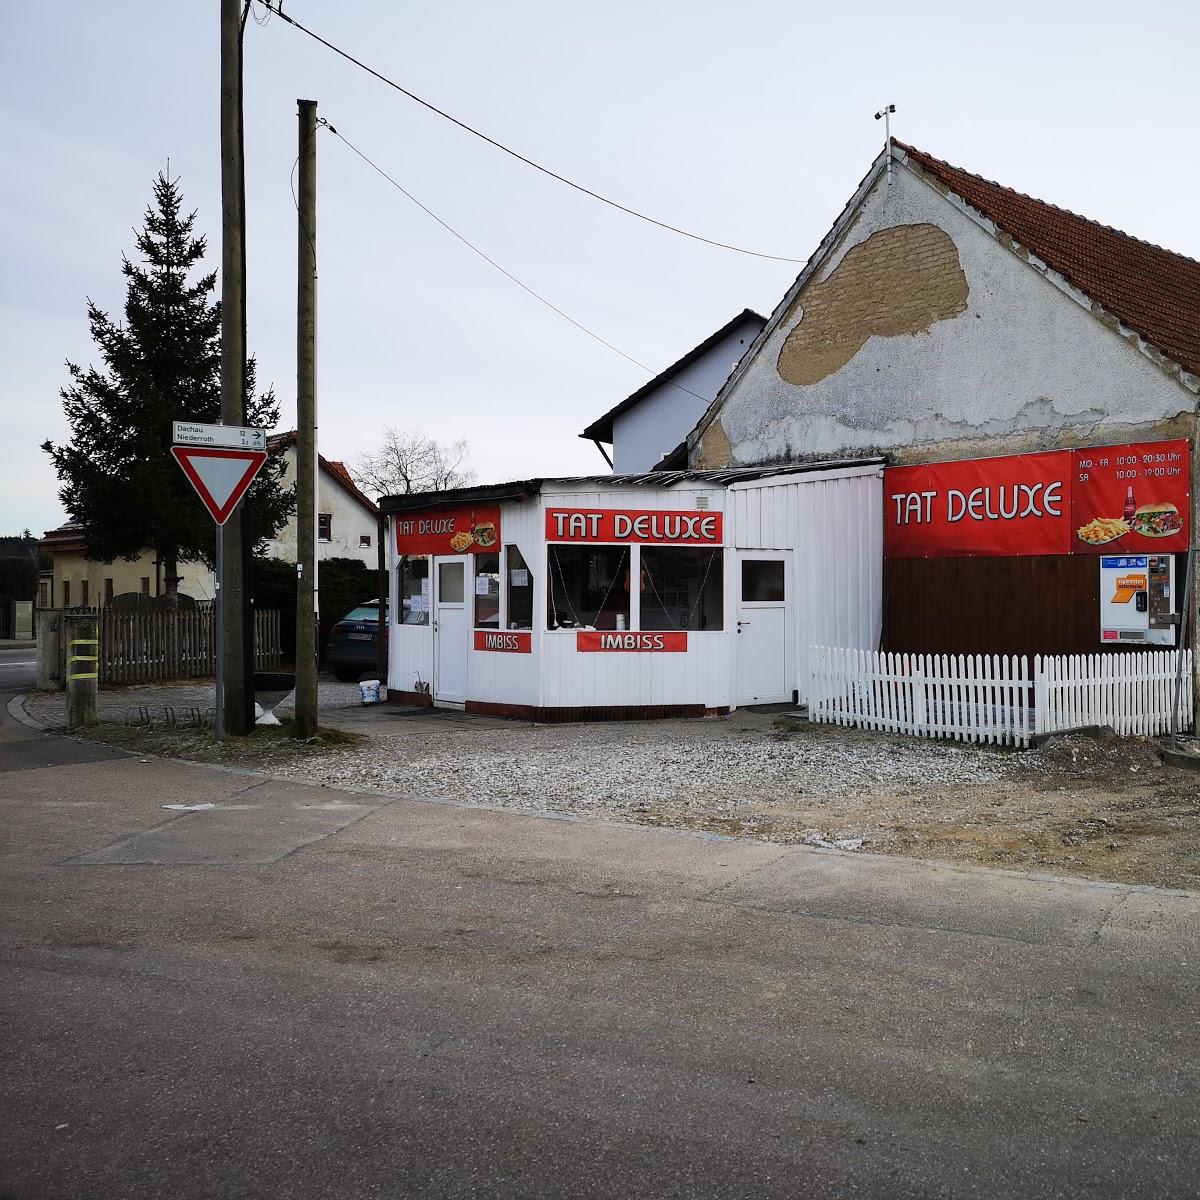 Restaurant "Tat Deluxe" in Markt Indersdorf